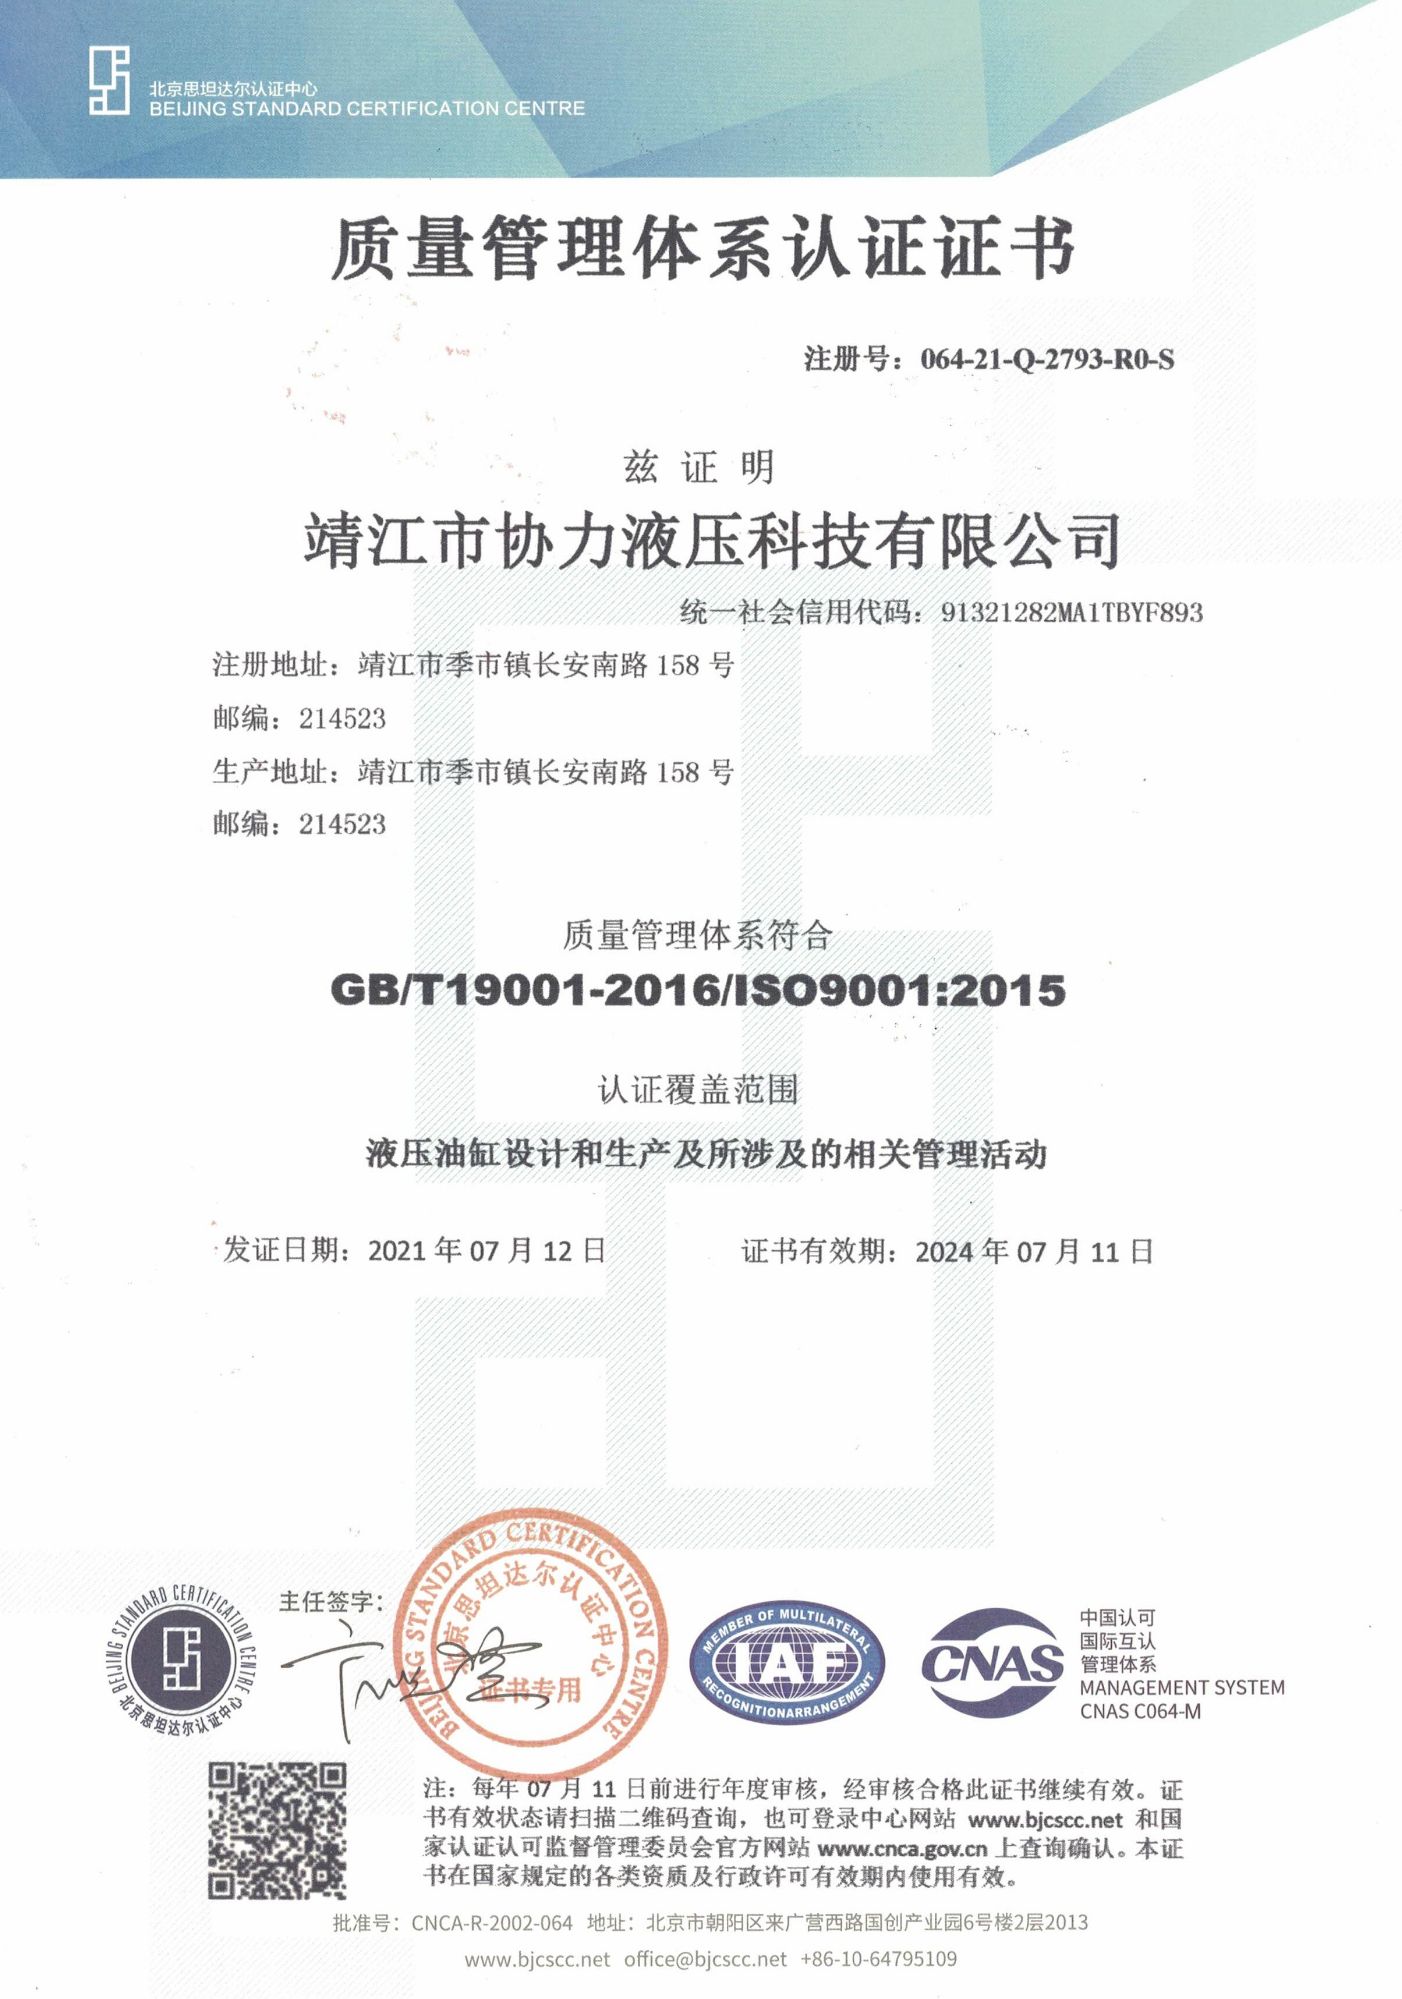 恭賀我司順利通過ISO9001質量管理體系認證